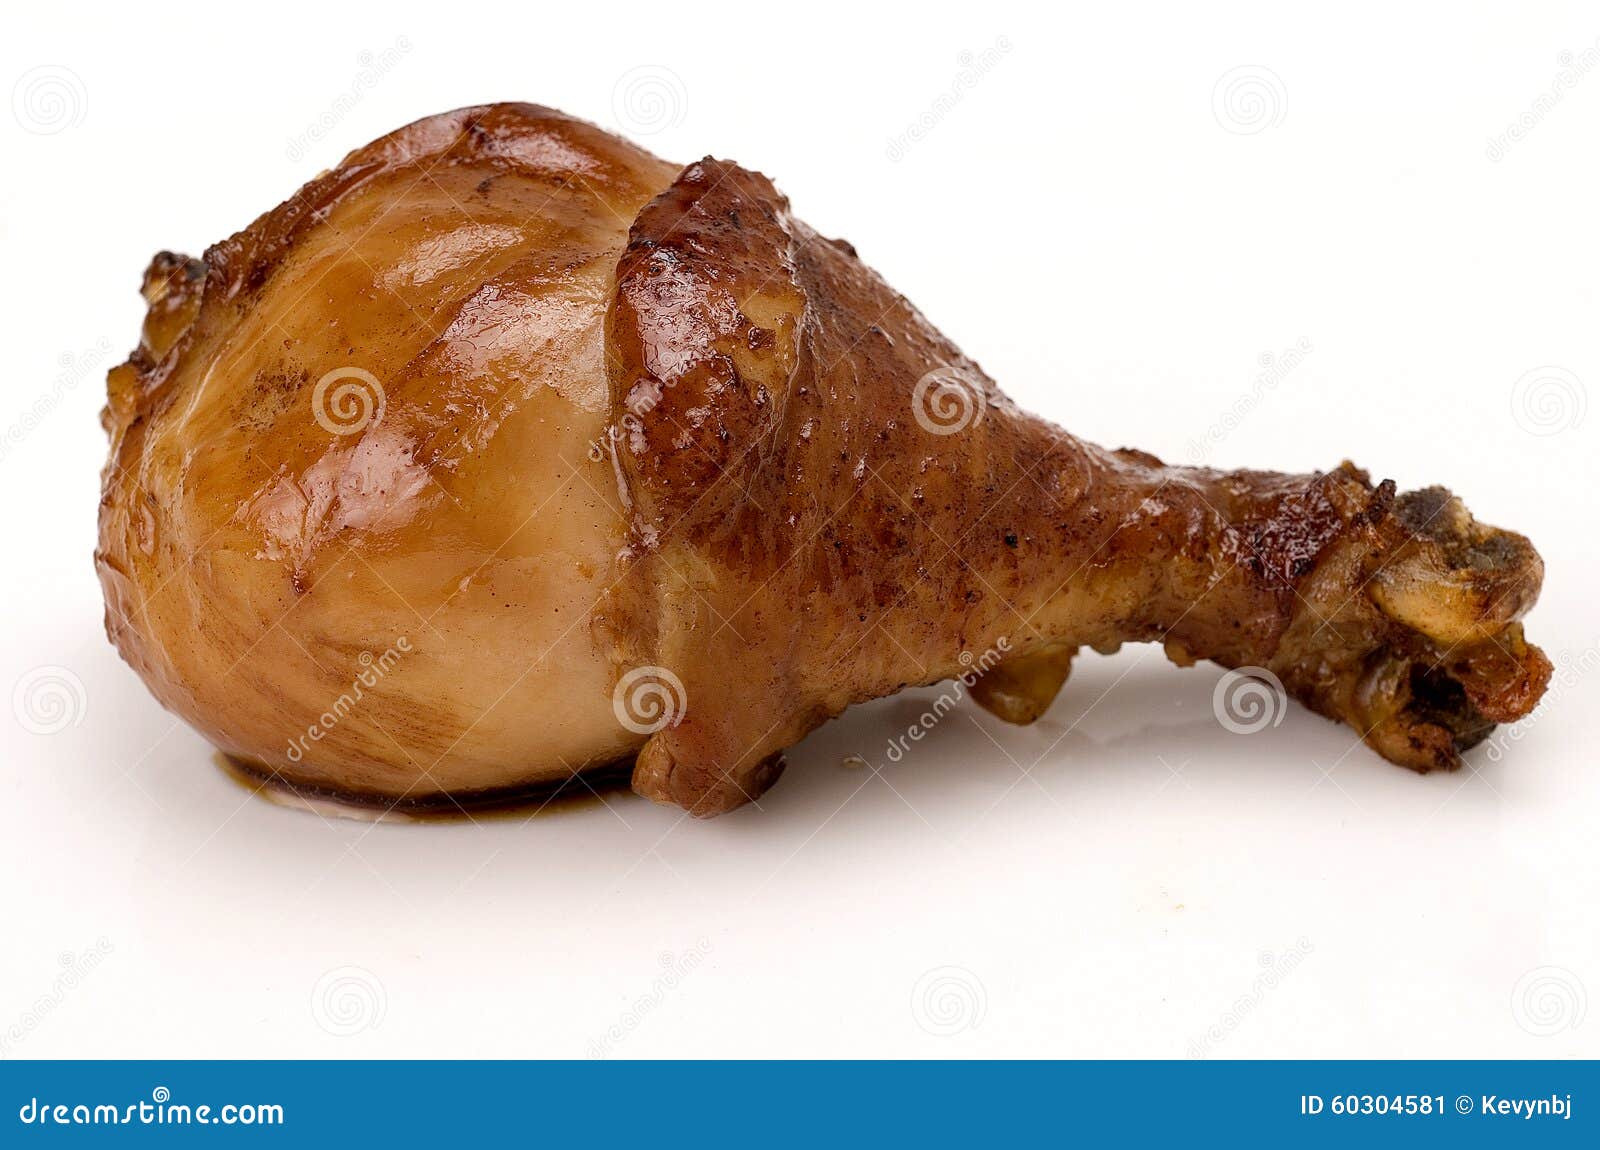 chicken leg drumstick